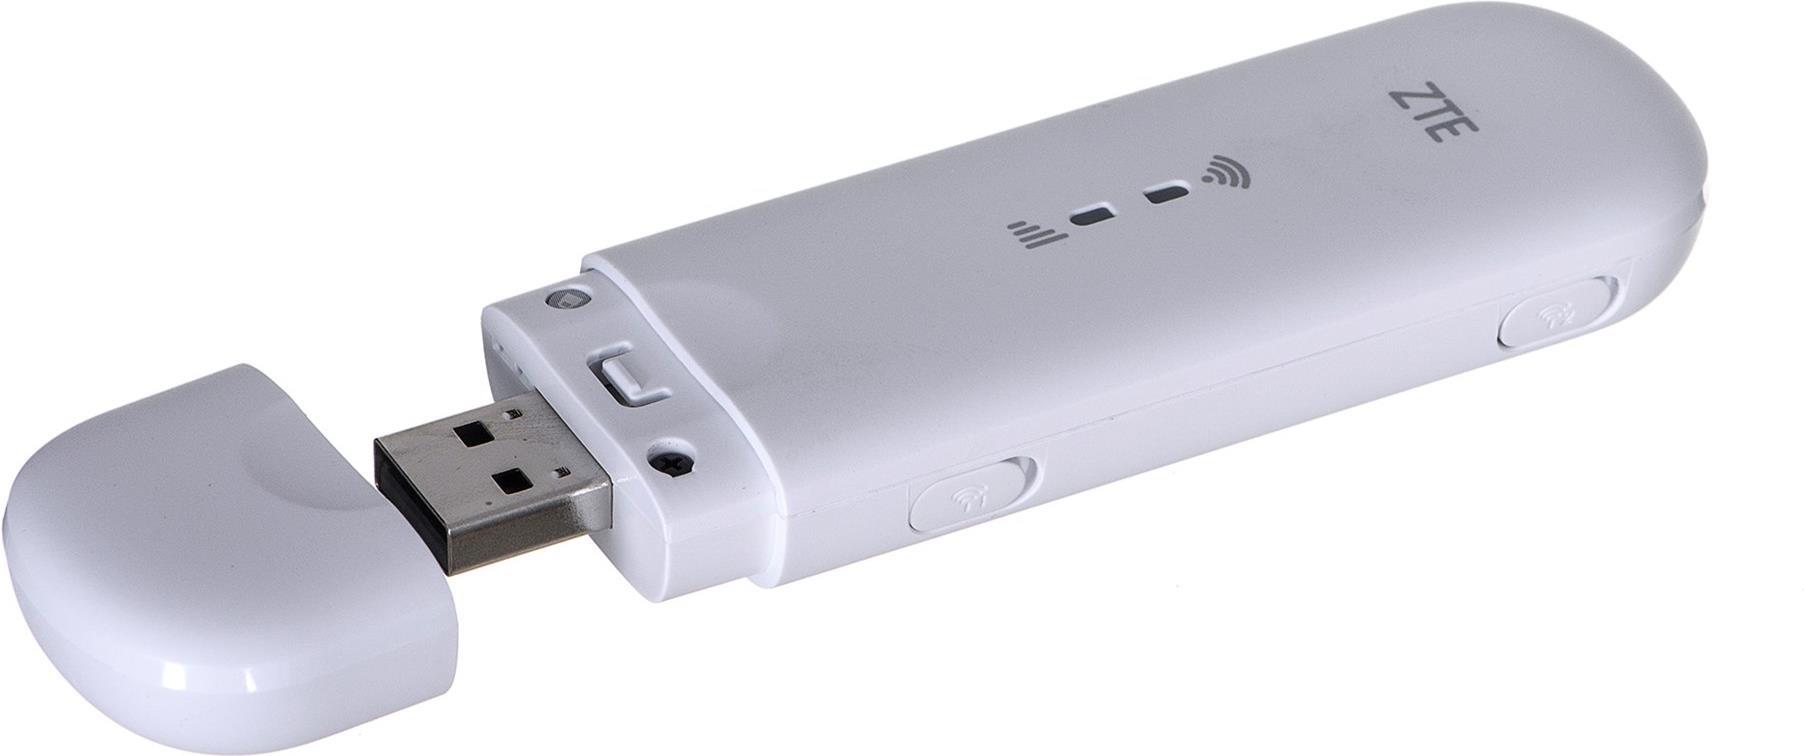 ZTE MF79N Wingle CAT4 4G LTE WLAN-USB-Modem Weiß (MF79N)